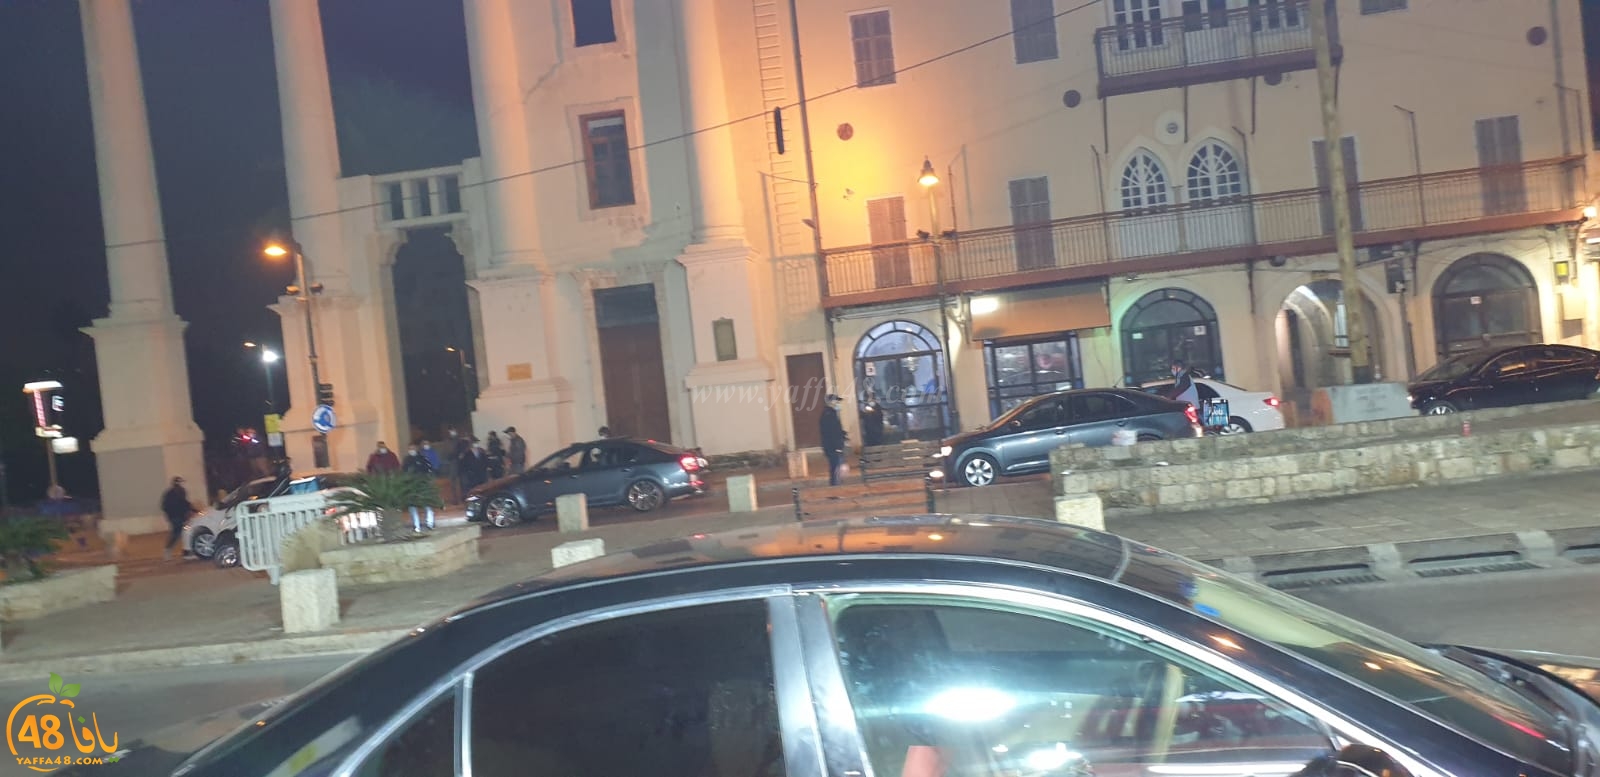  الشرطة تنتشر بكثافة في يافا لمنع اقامة أي مراسم احتفالية بالعام الجديد 